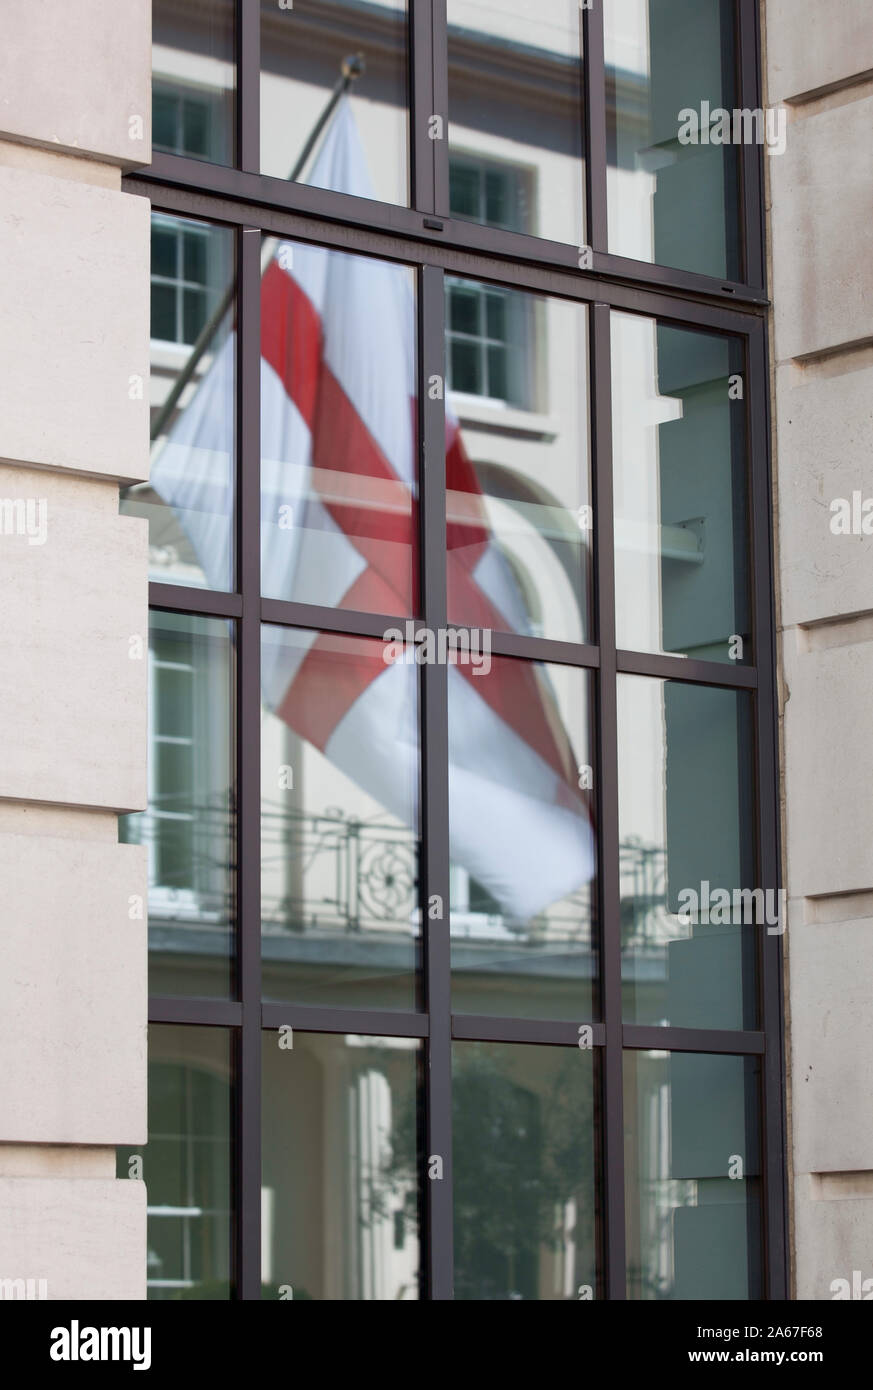 Reflexion der St George Cross Flag im Fenster der Londoner Gebäude Stockfoto